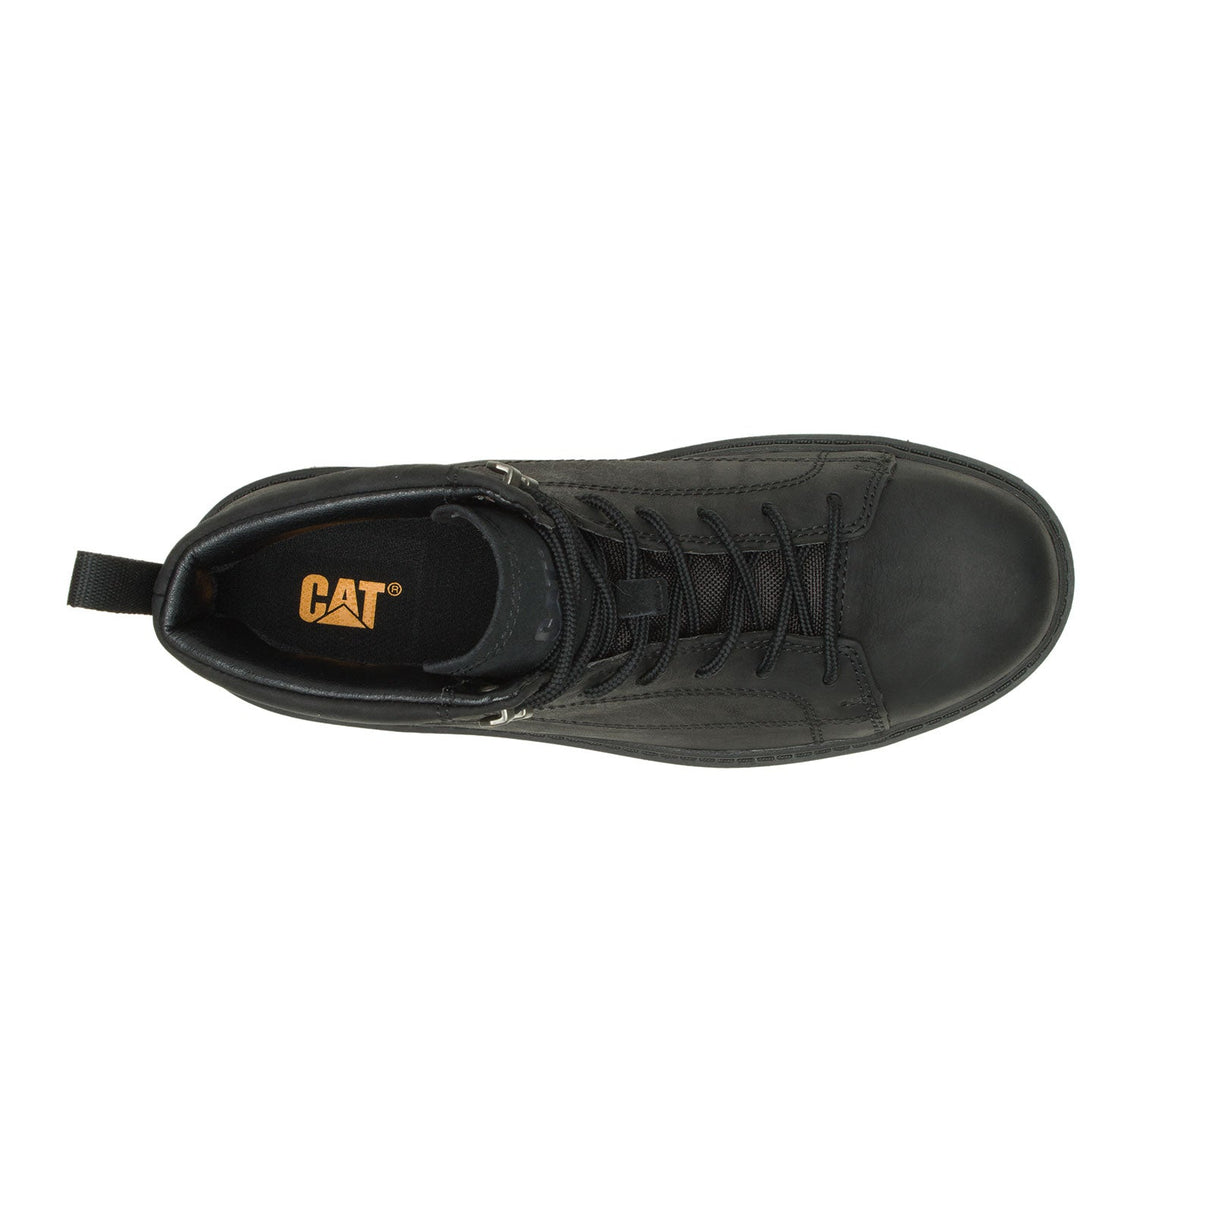 Caterpillar Modulate Wp Men's Tactical Work Shoes P725405-4